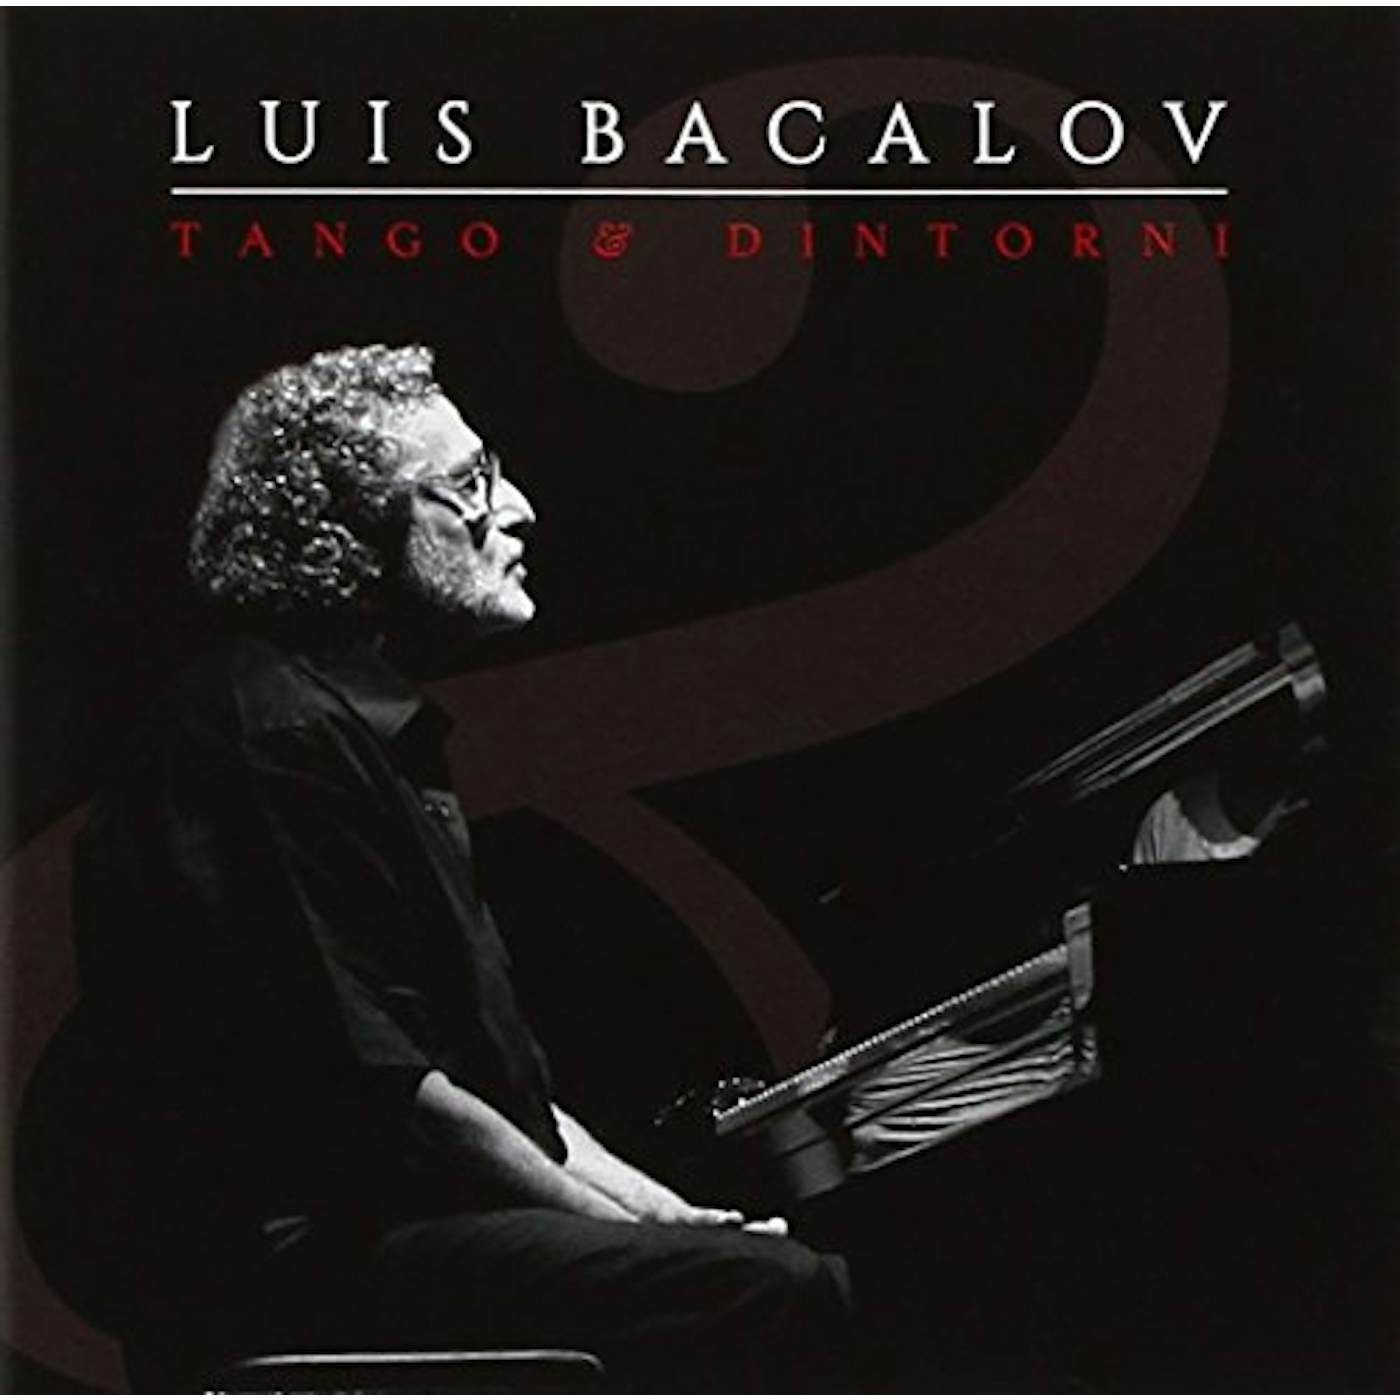 Luis Bacalov TANGO E DINTORNI CD